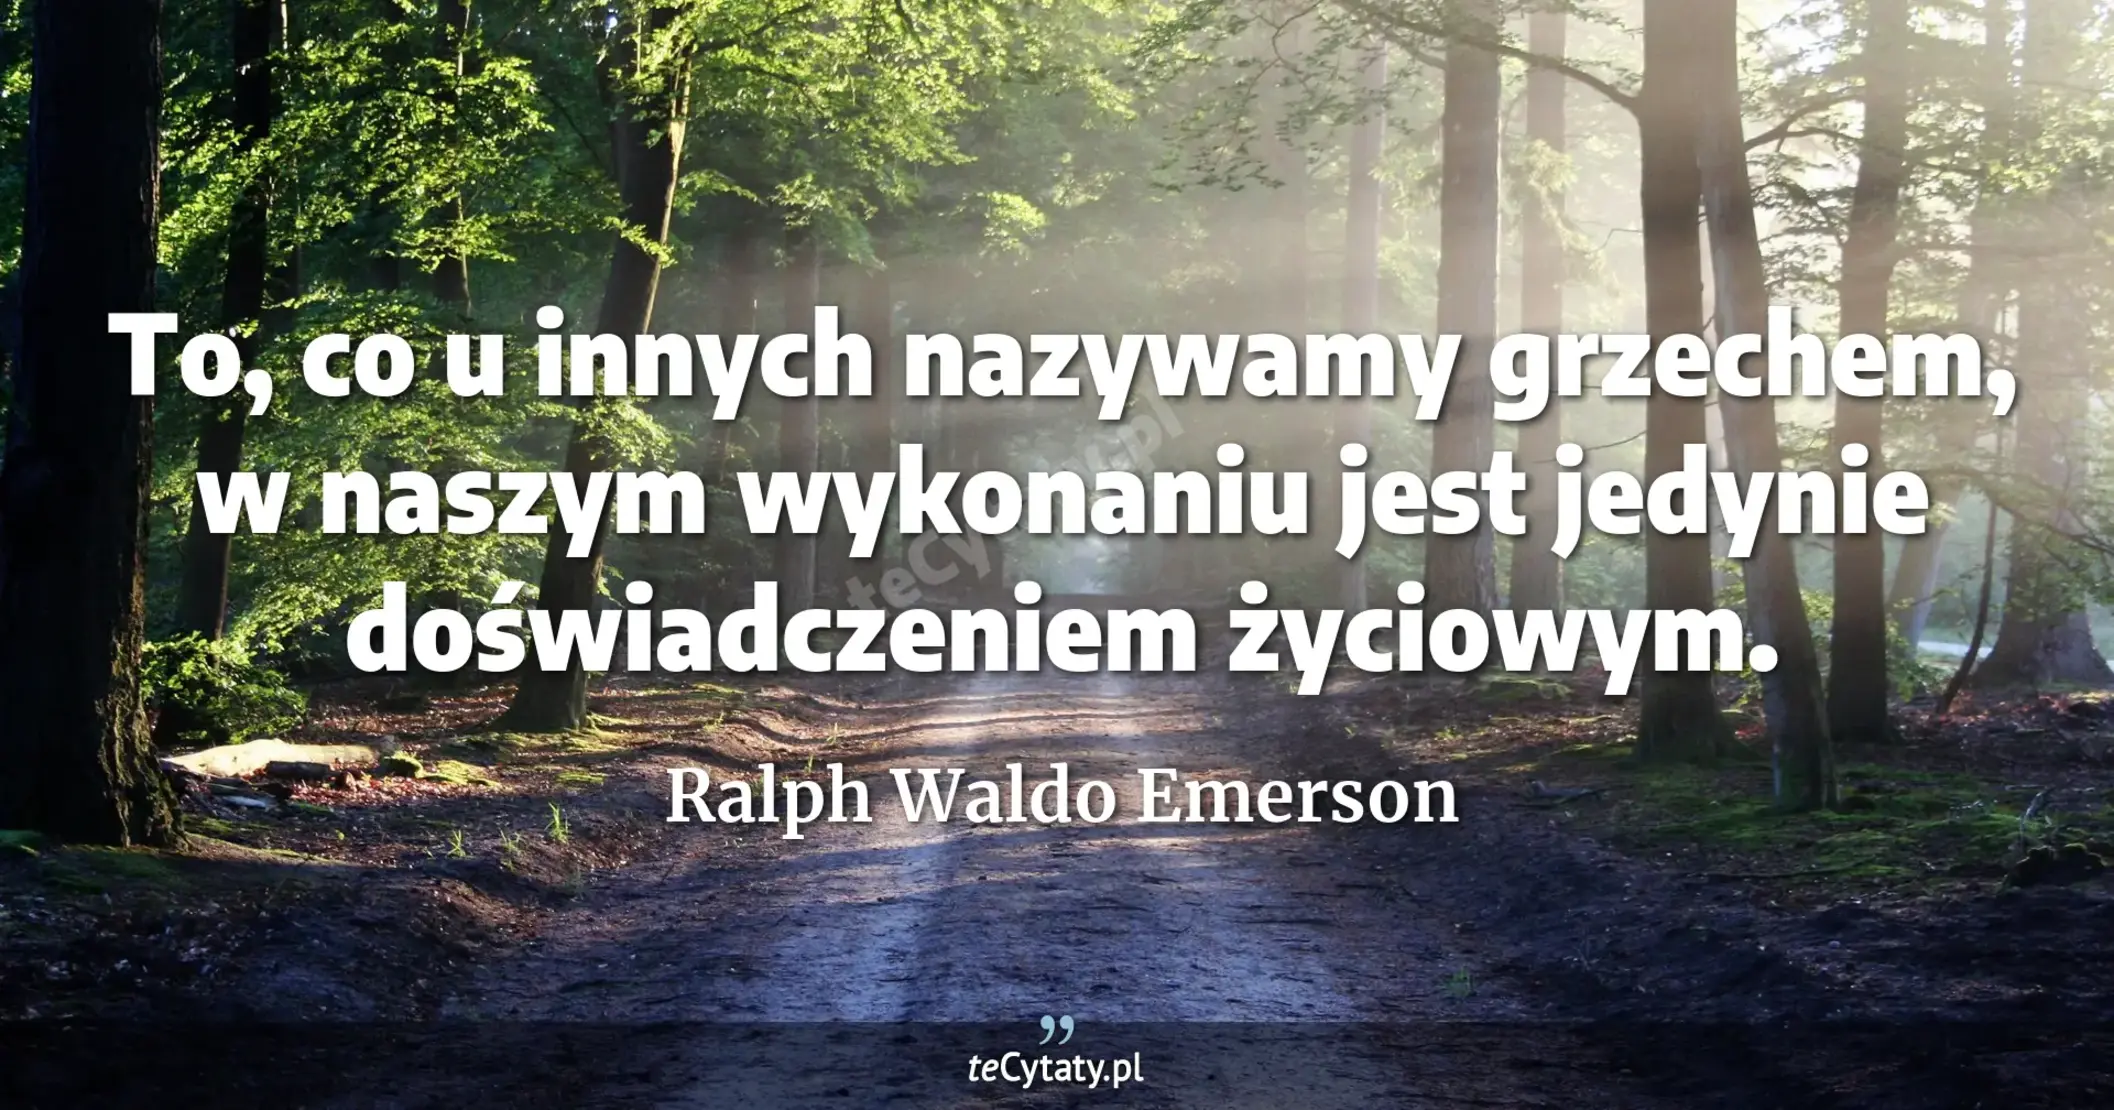 To, co u innych nazywamy grzechem, w naszym wykonaniu jest jedynie doświadczeniem życiowym. - Ralph Waldo Emerson